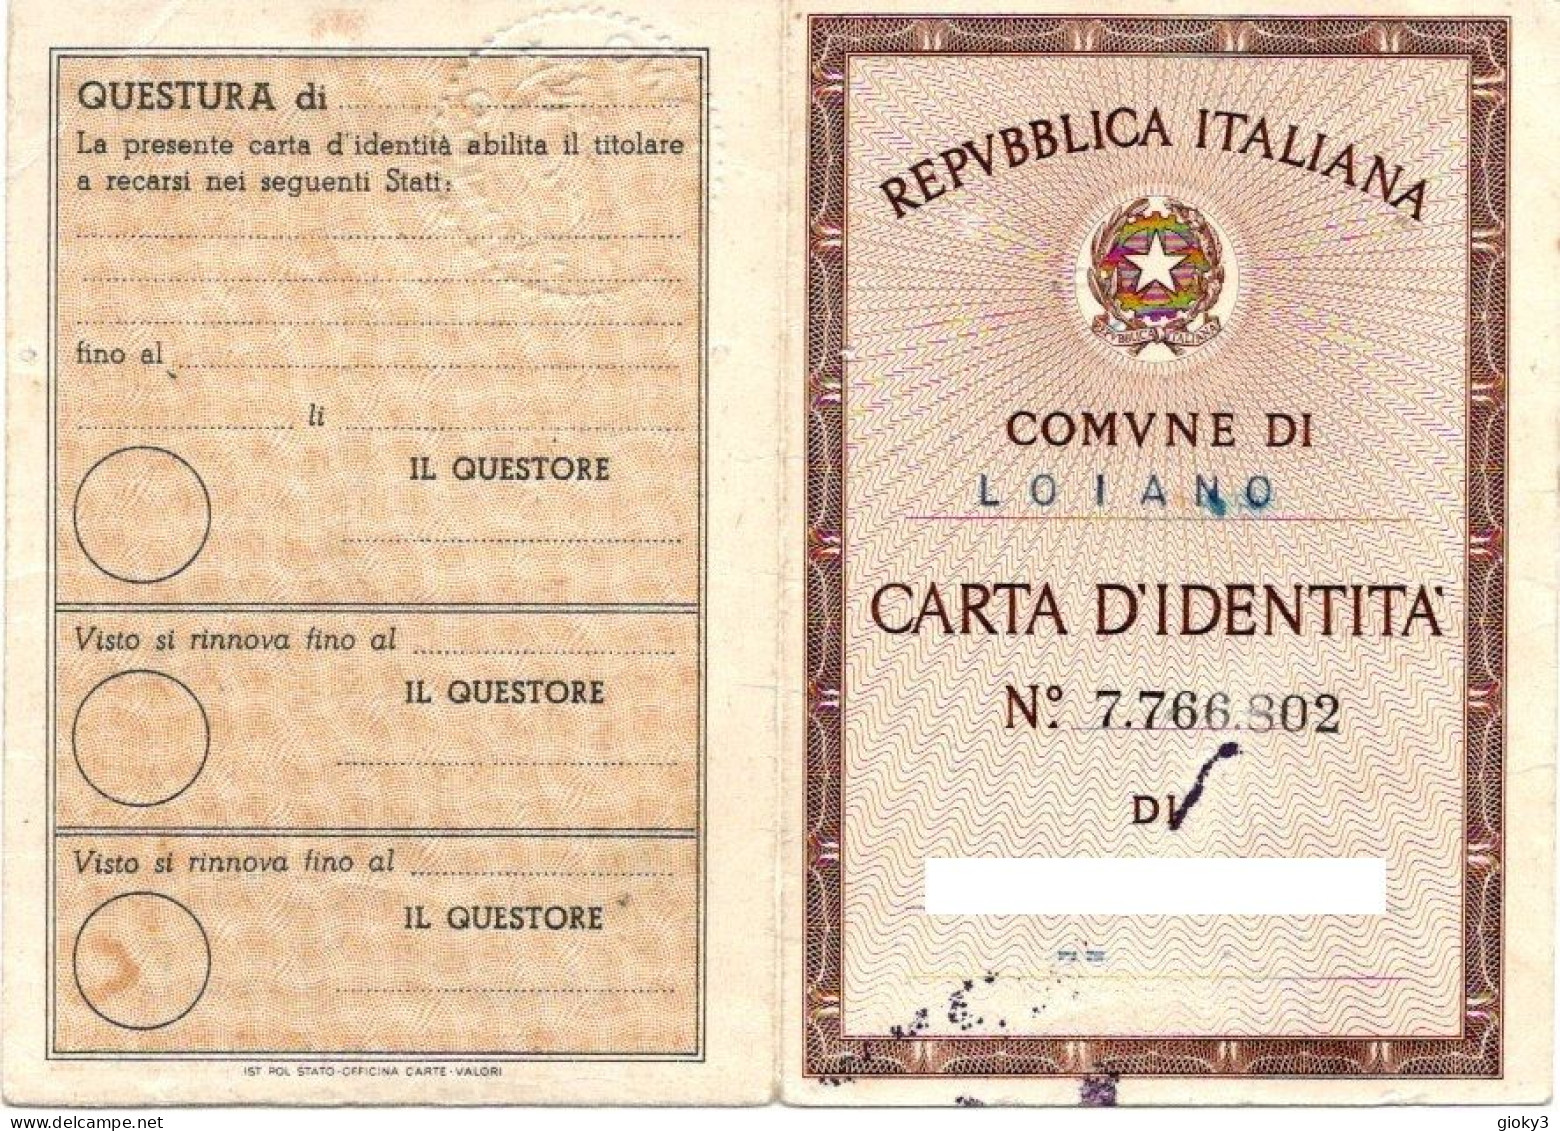 CARTA D'IDENTITA' EMESSA A LOIANO 1959 - Gebührenstempel, Impoststempel